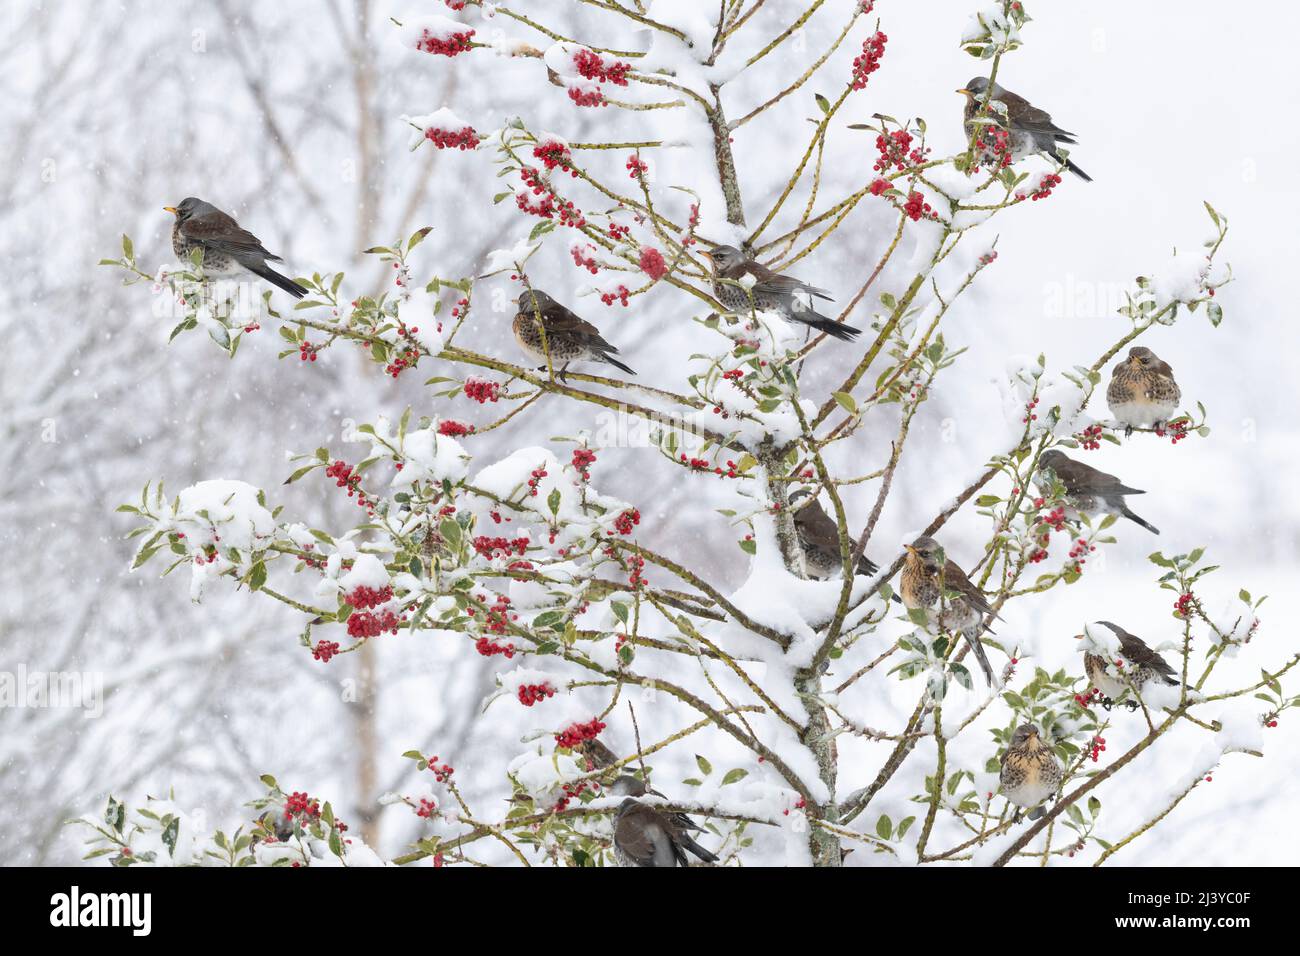 Un flower de Fieldfares (Turdus pilaris) dans un arbre de Holly (Ilex aquafolium) en hiver se nourrissant des baies rouges comme des chutes de neige Banque D'Images